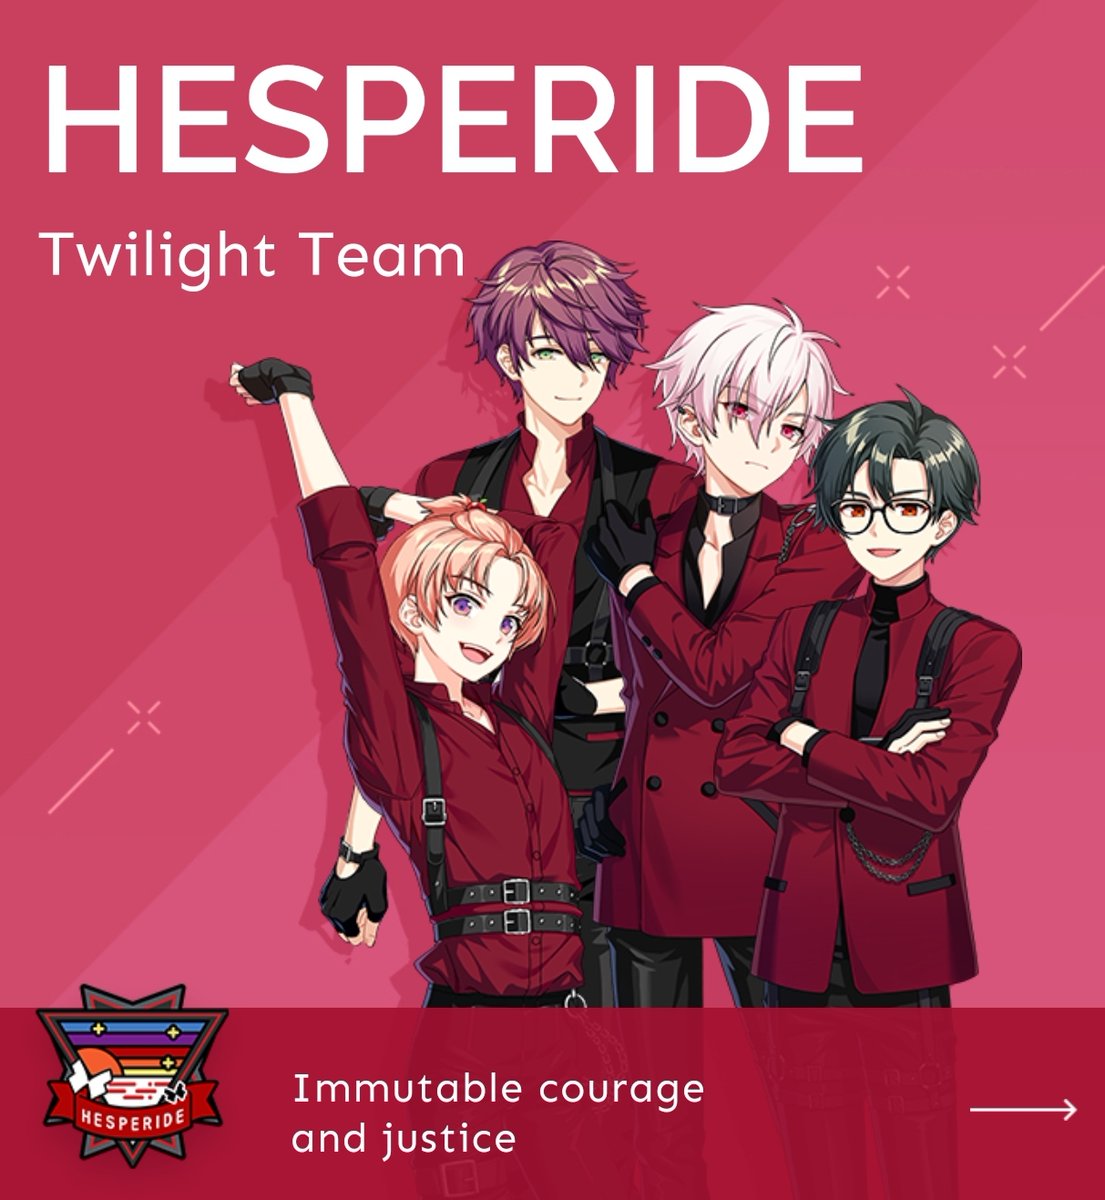 *HESPERIDE (Twilight Team) 